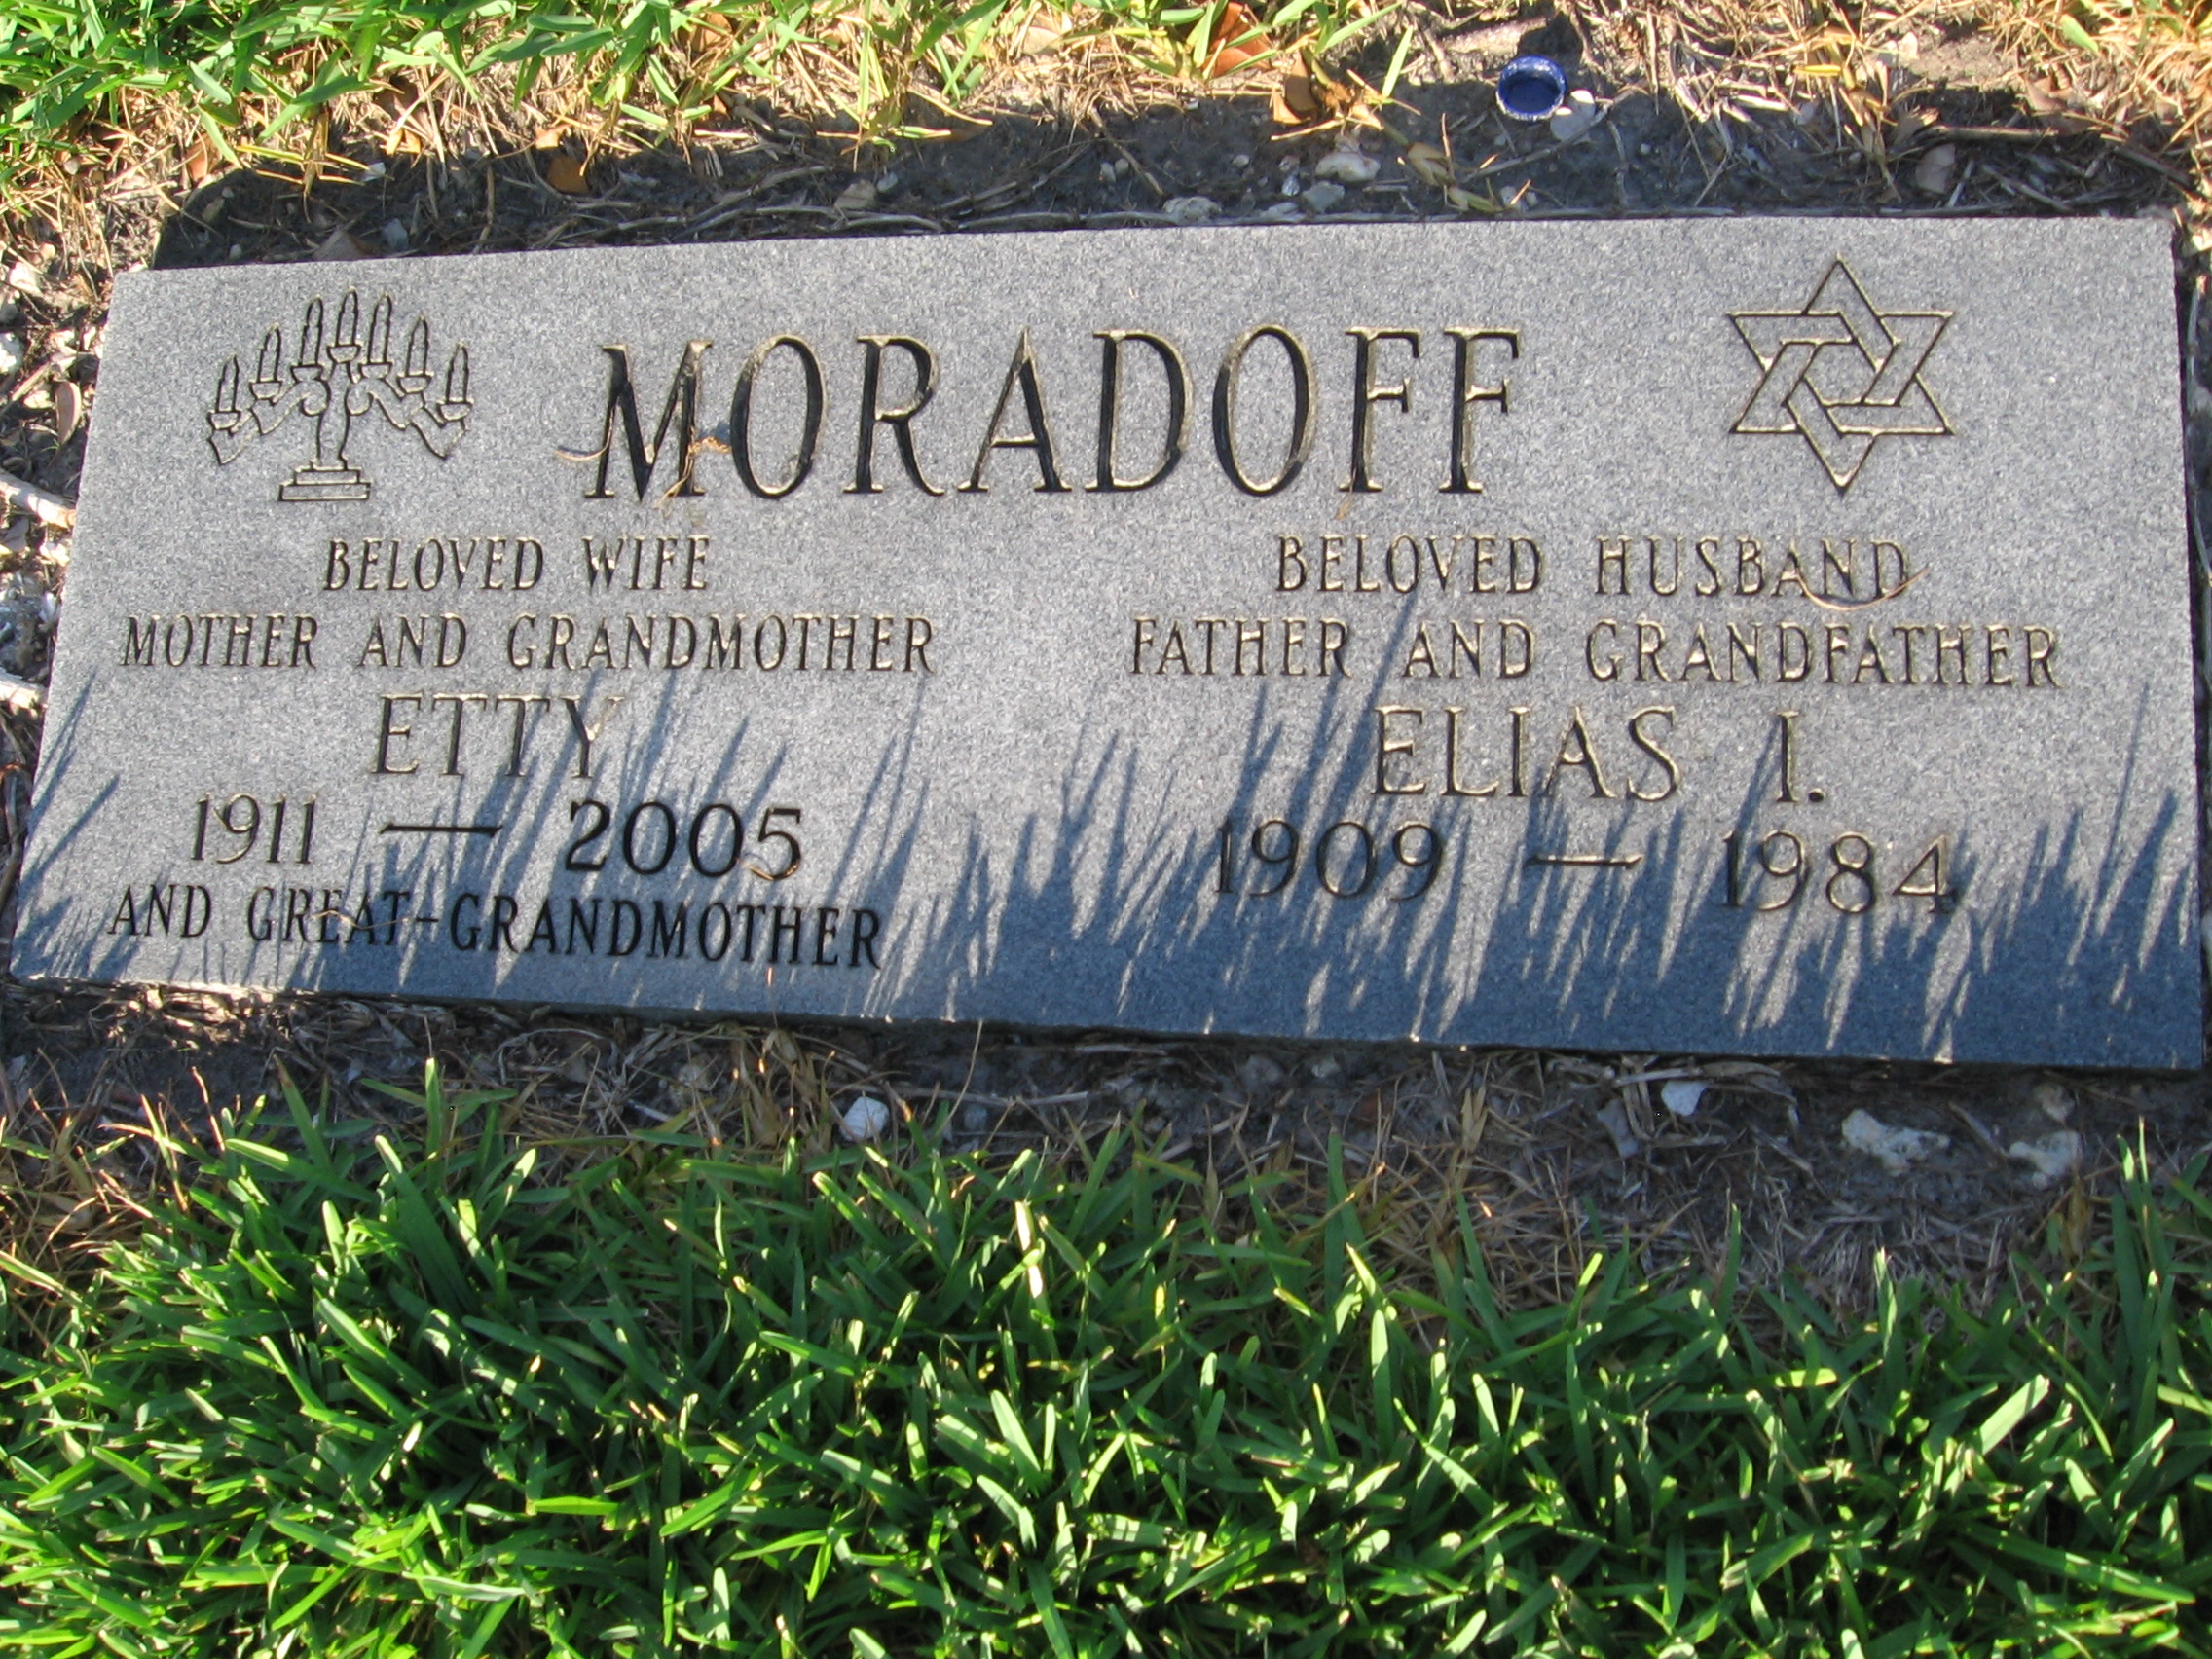 Elias I Moradoff